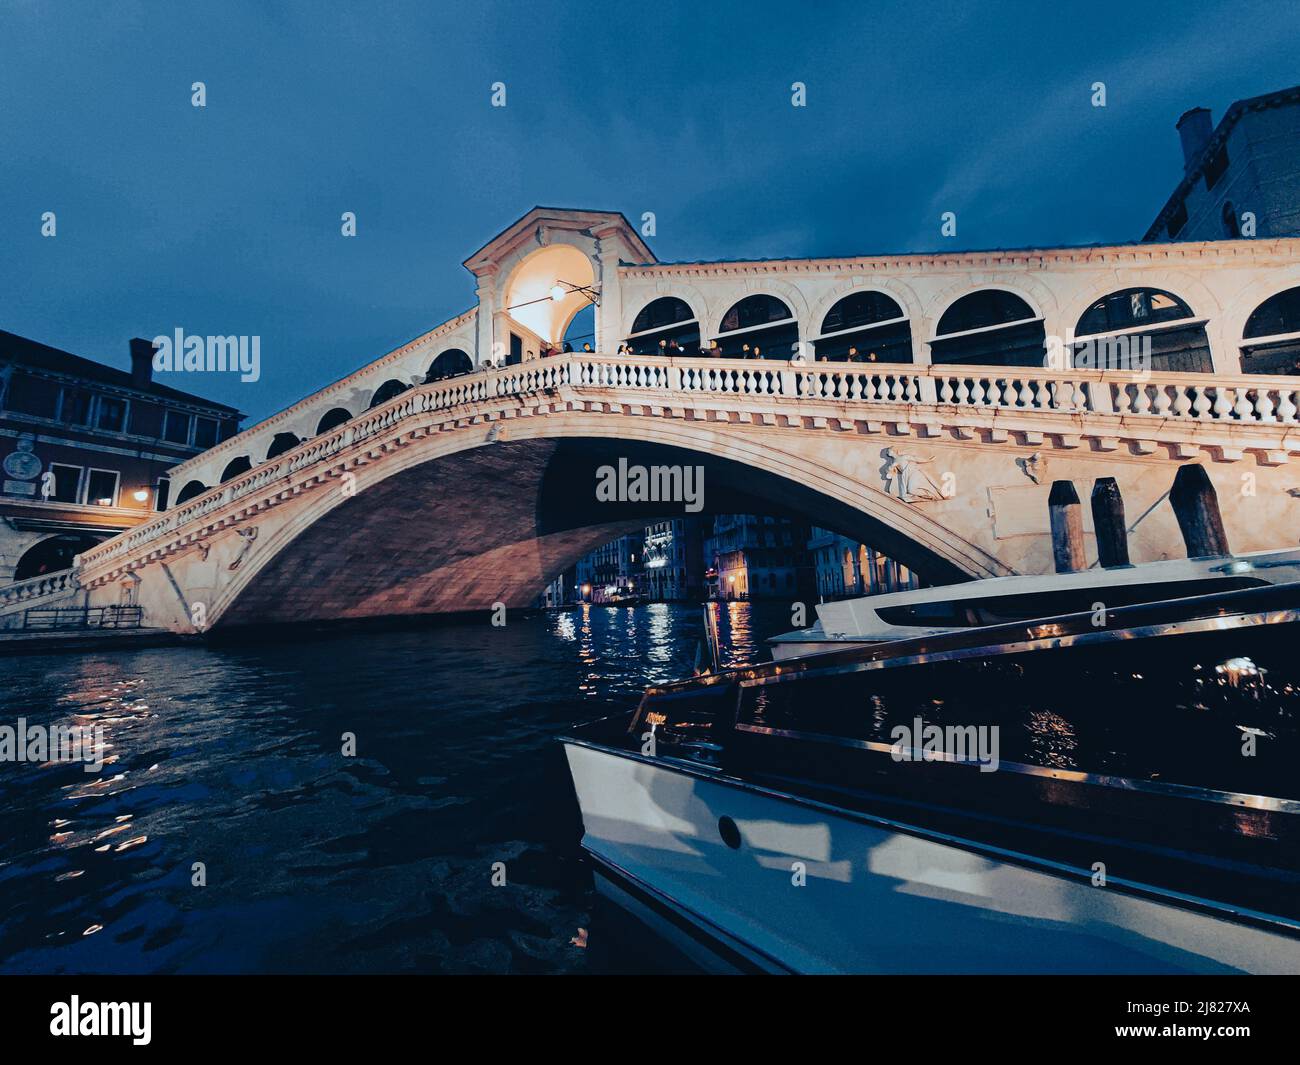 Rialto Bridge in Venice, Italy at night Stock Photo